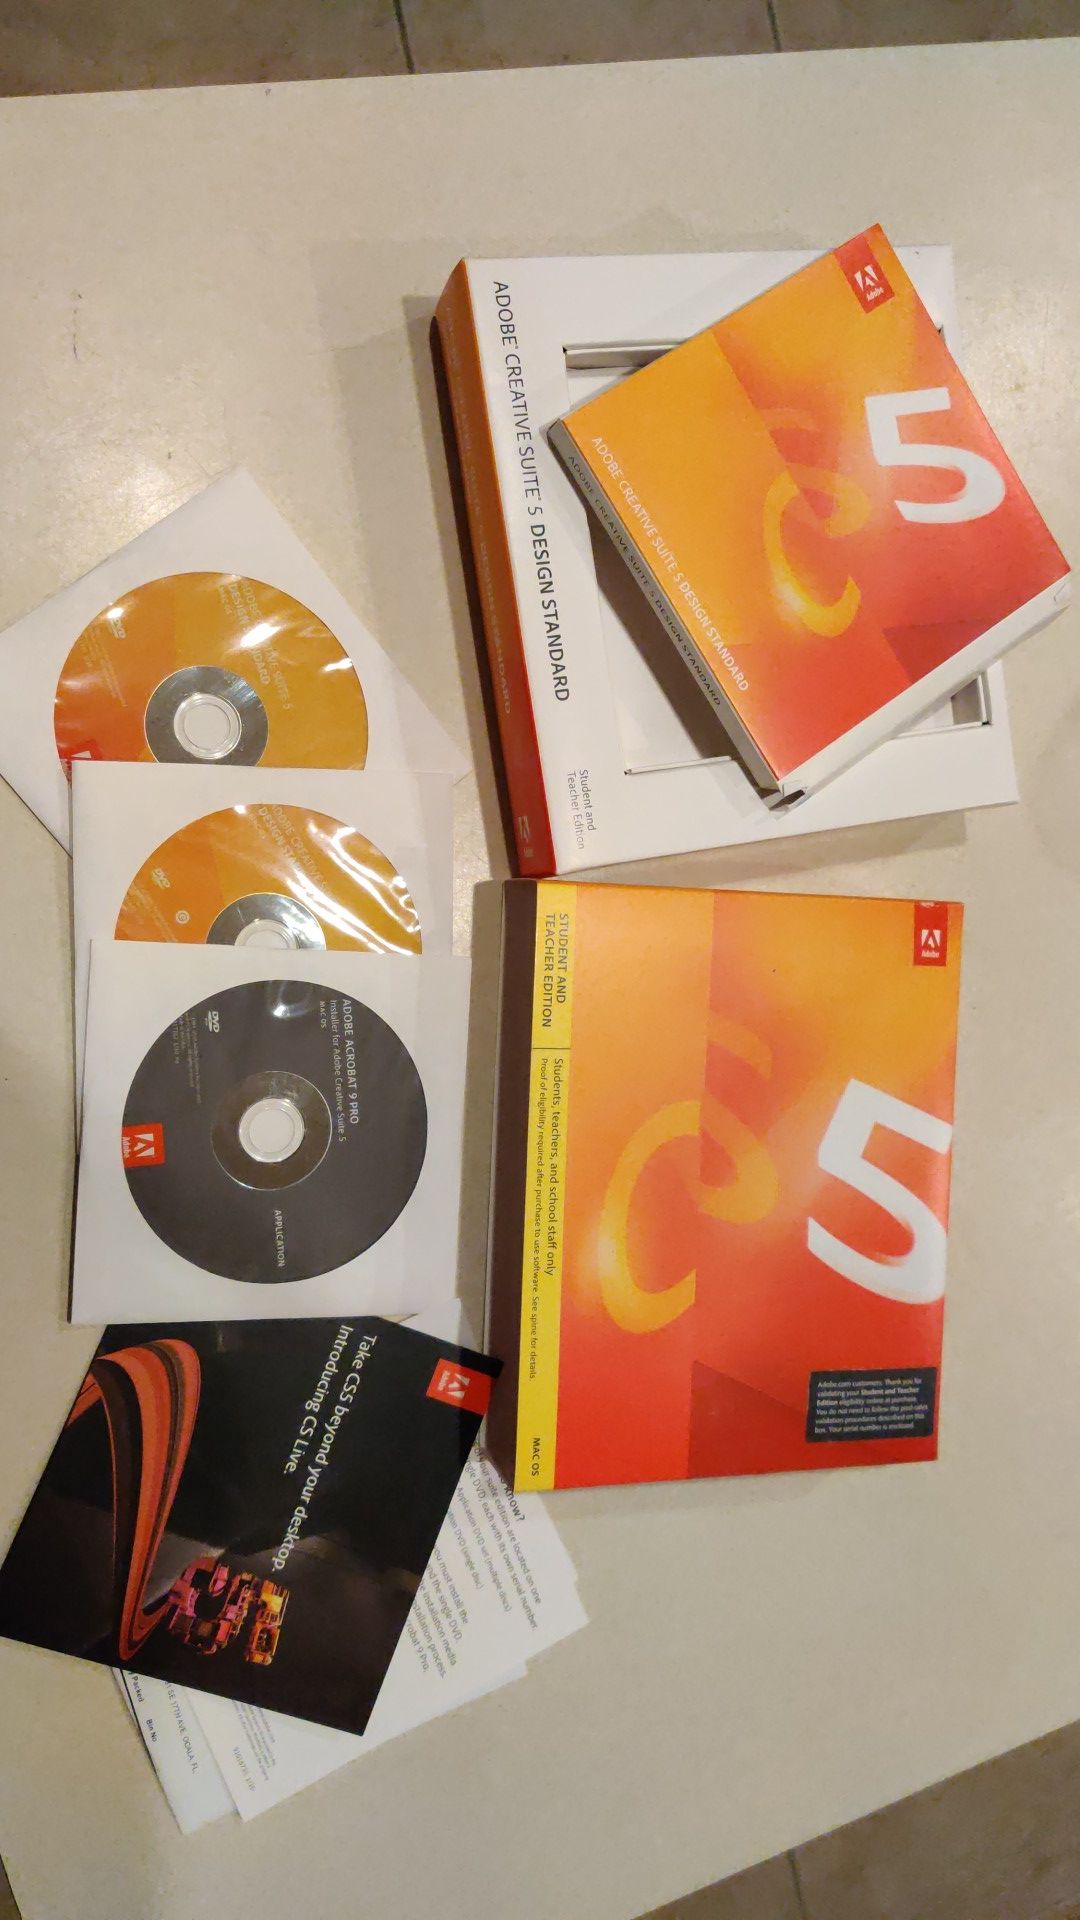 Adobe Creative Suite 5 design standard MAC OS.